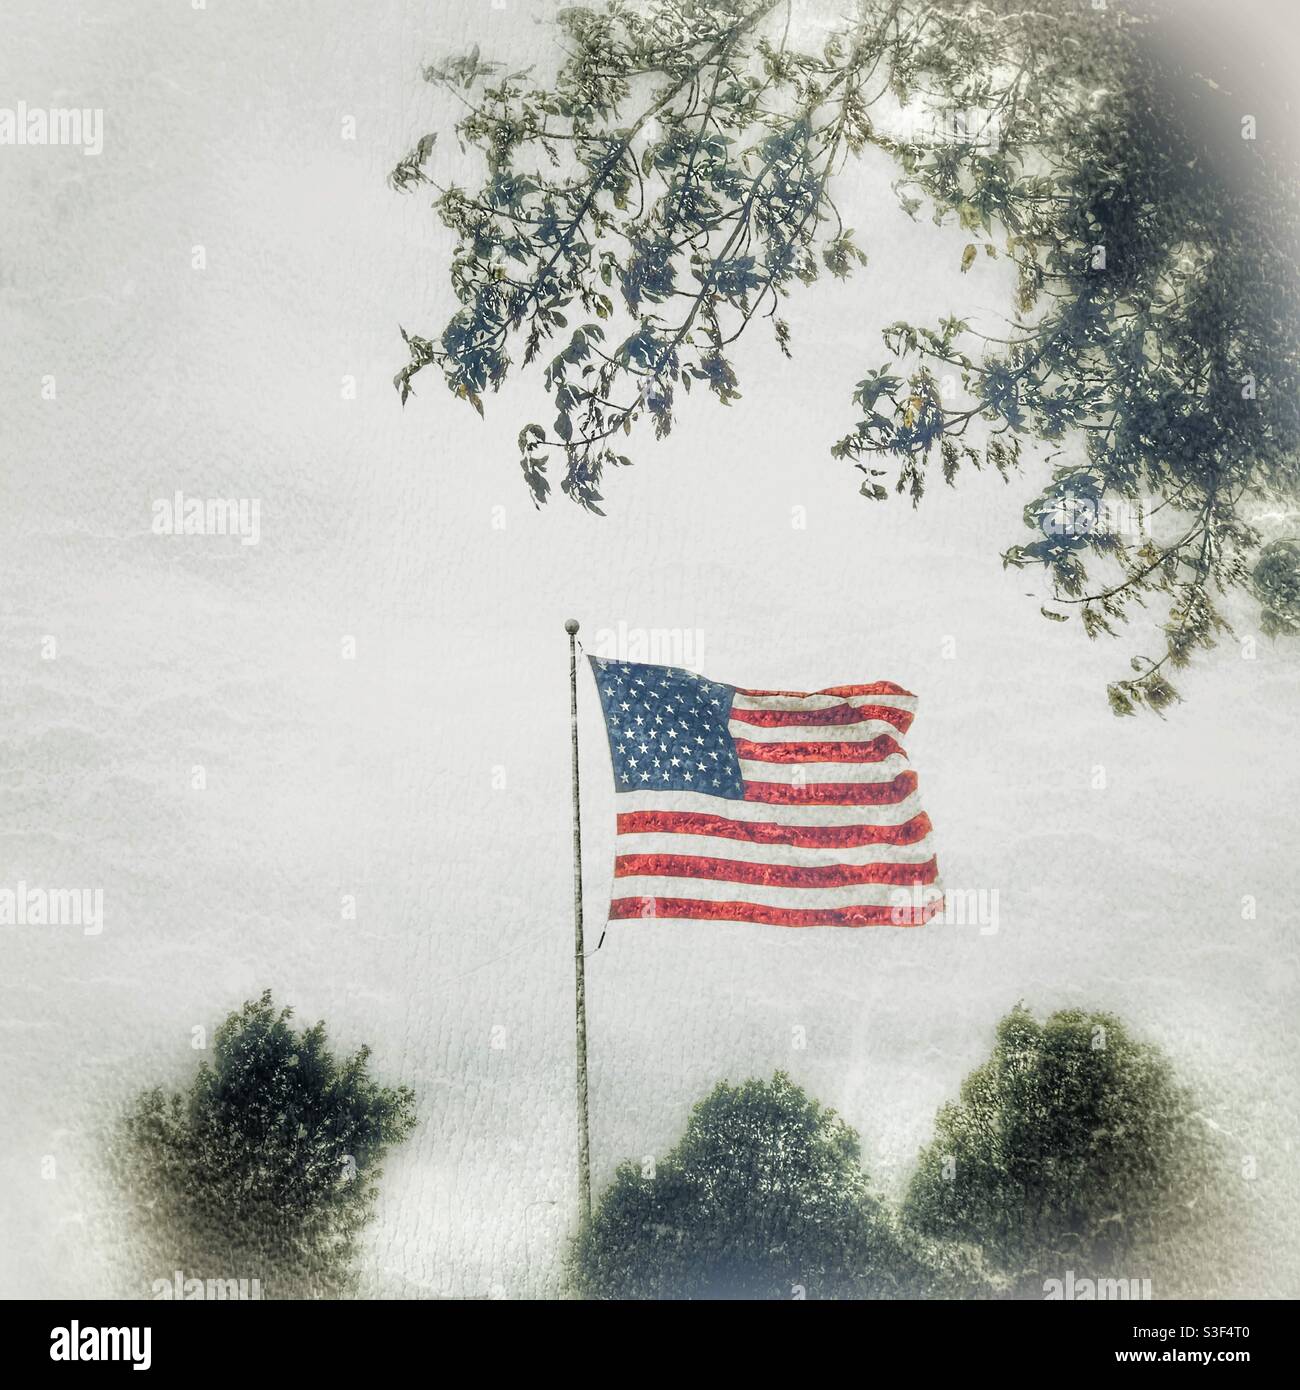 Bandera Americana volando entre un fondo blanco Foggy rodeado por Árboles Foto de stock